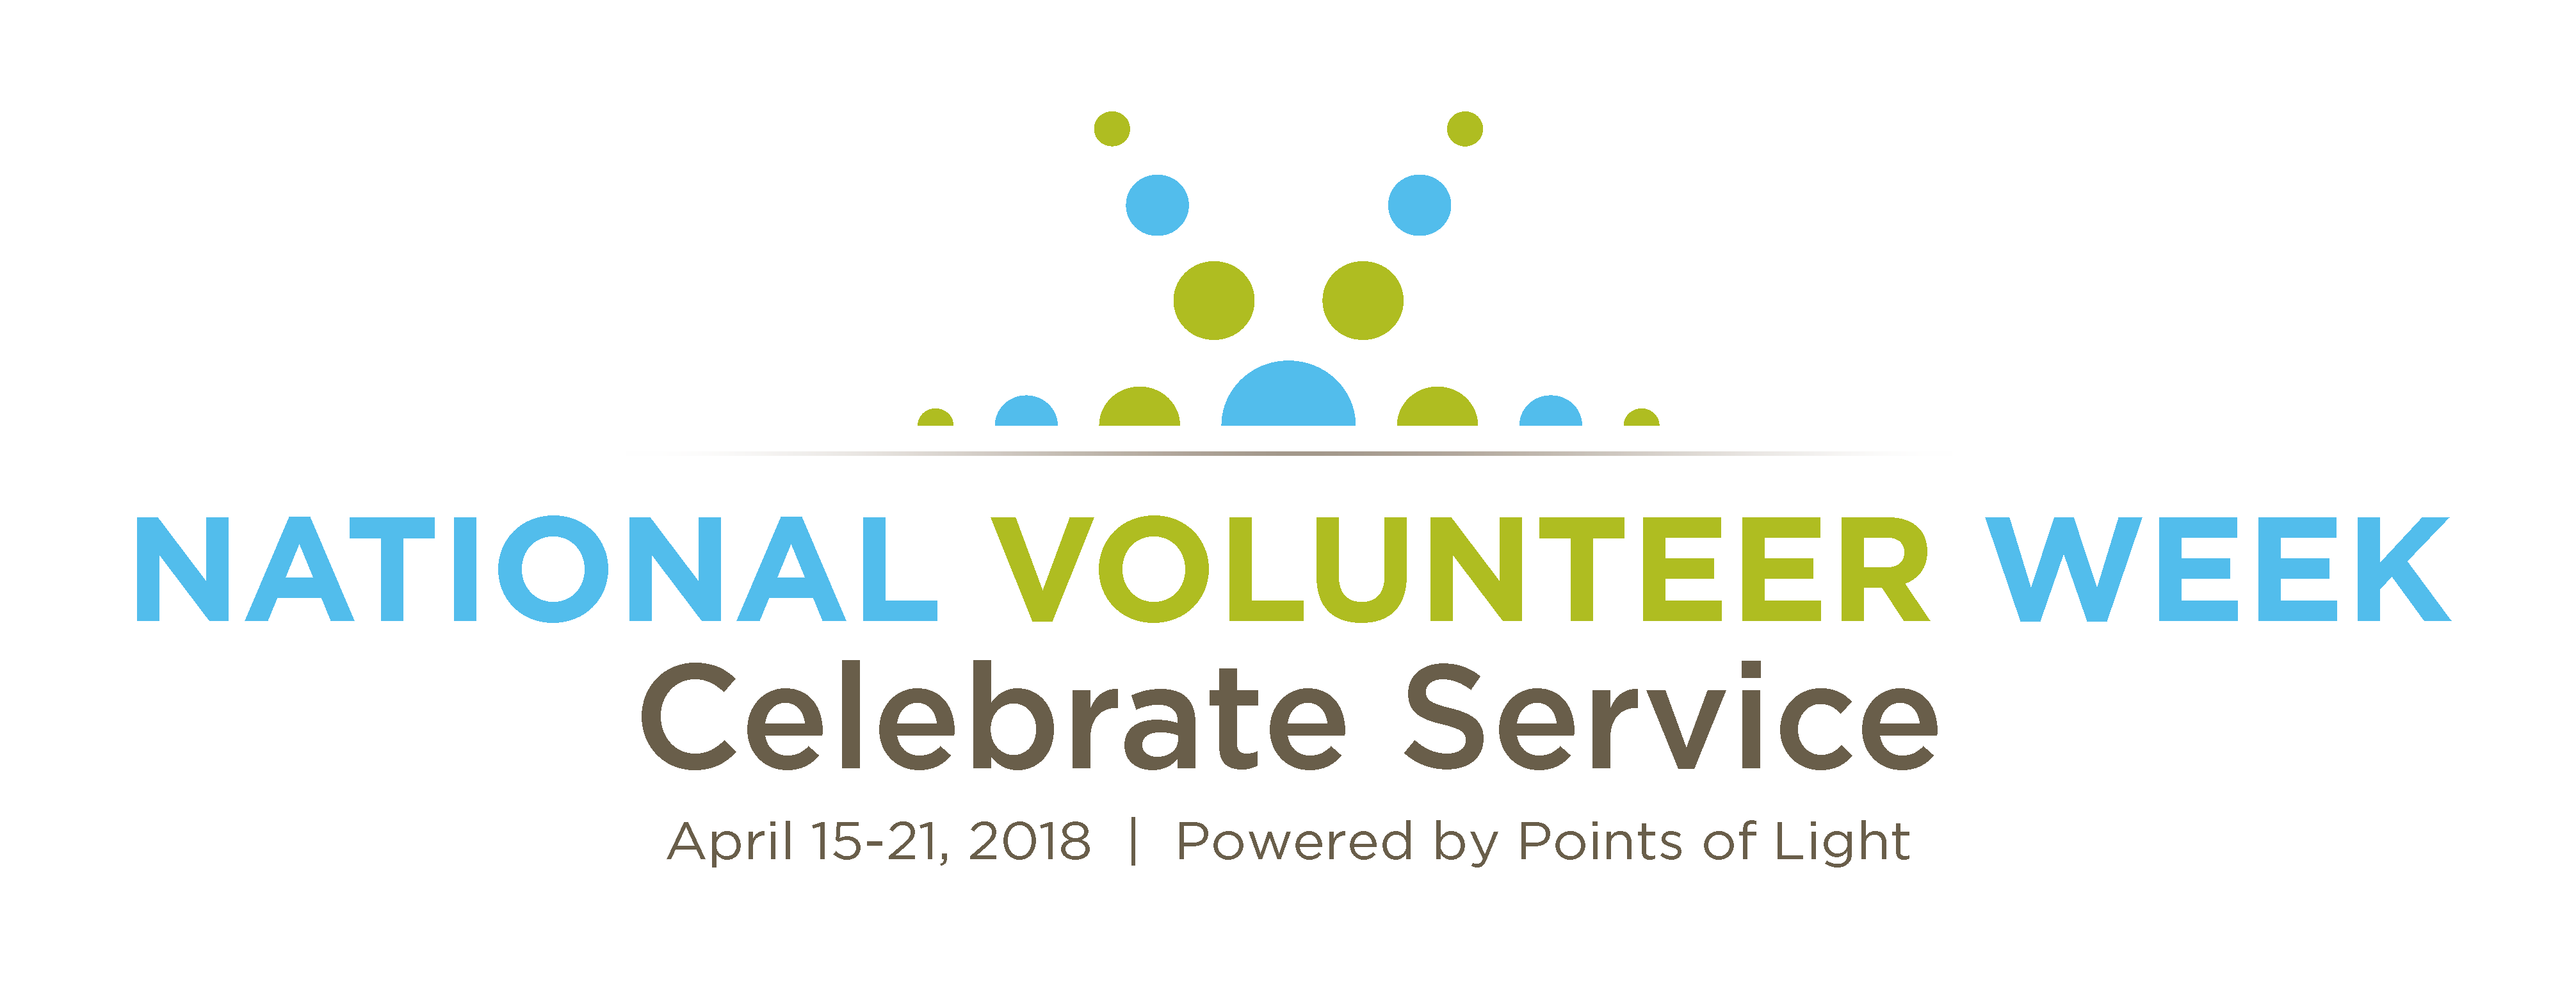 National Volunteer Week | Celebrate Service